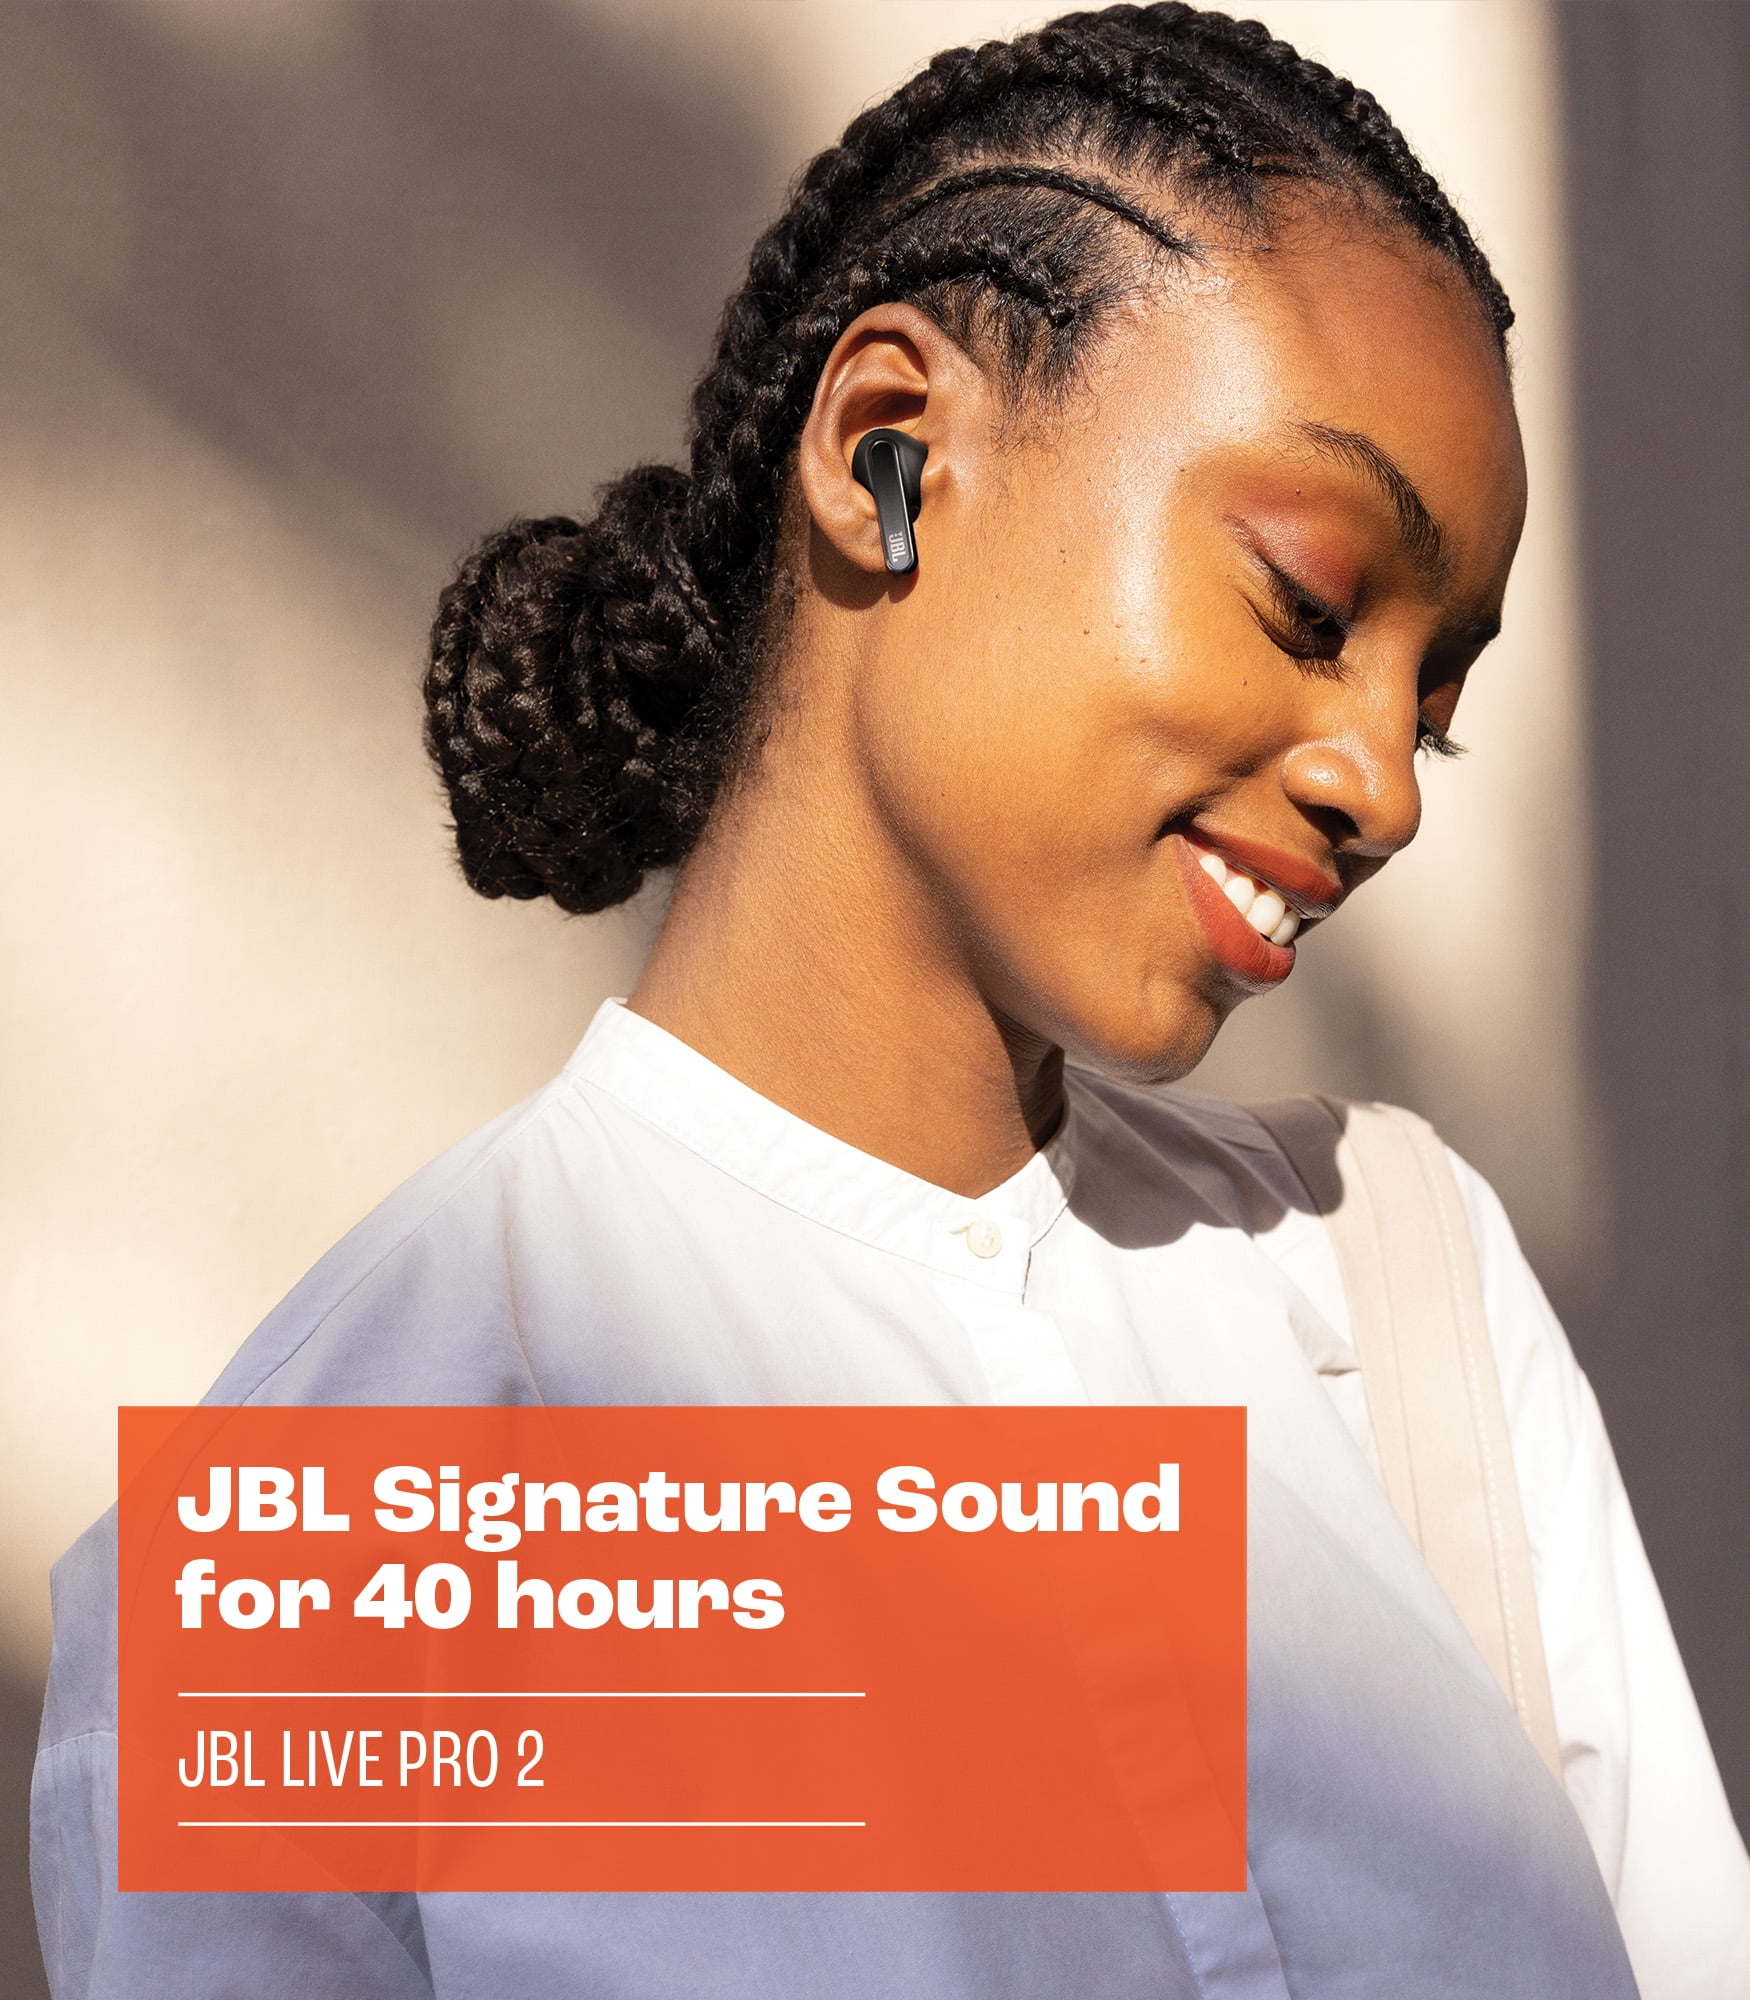 JBL Live Pro 2 True Wireless Noise Cancelling Earbuds - Black 